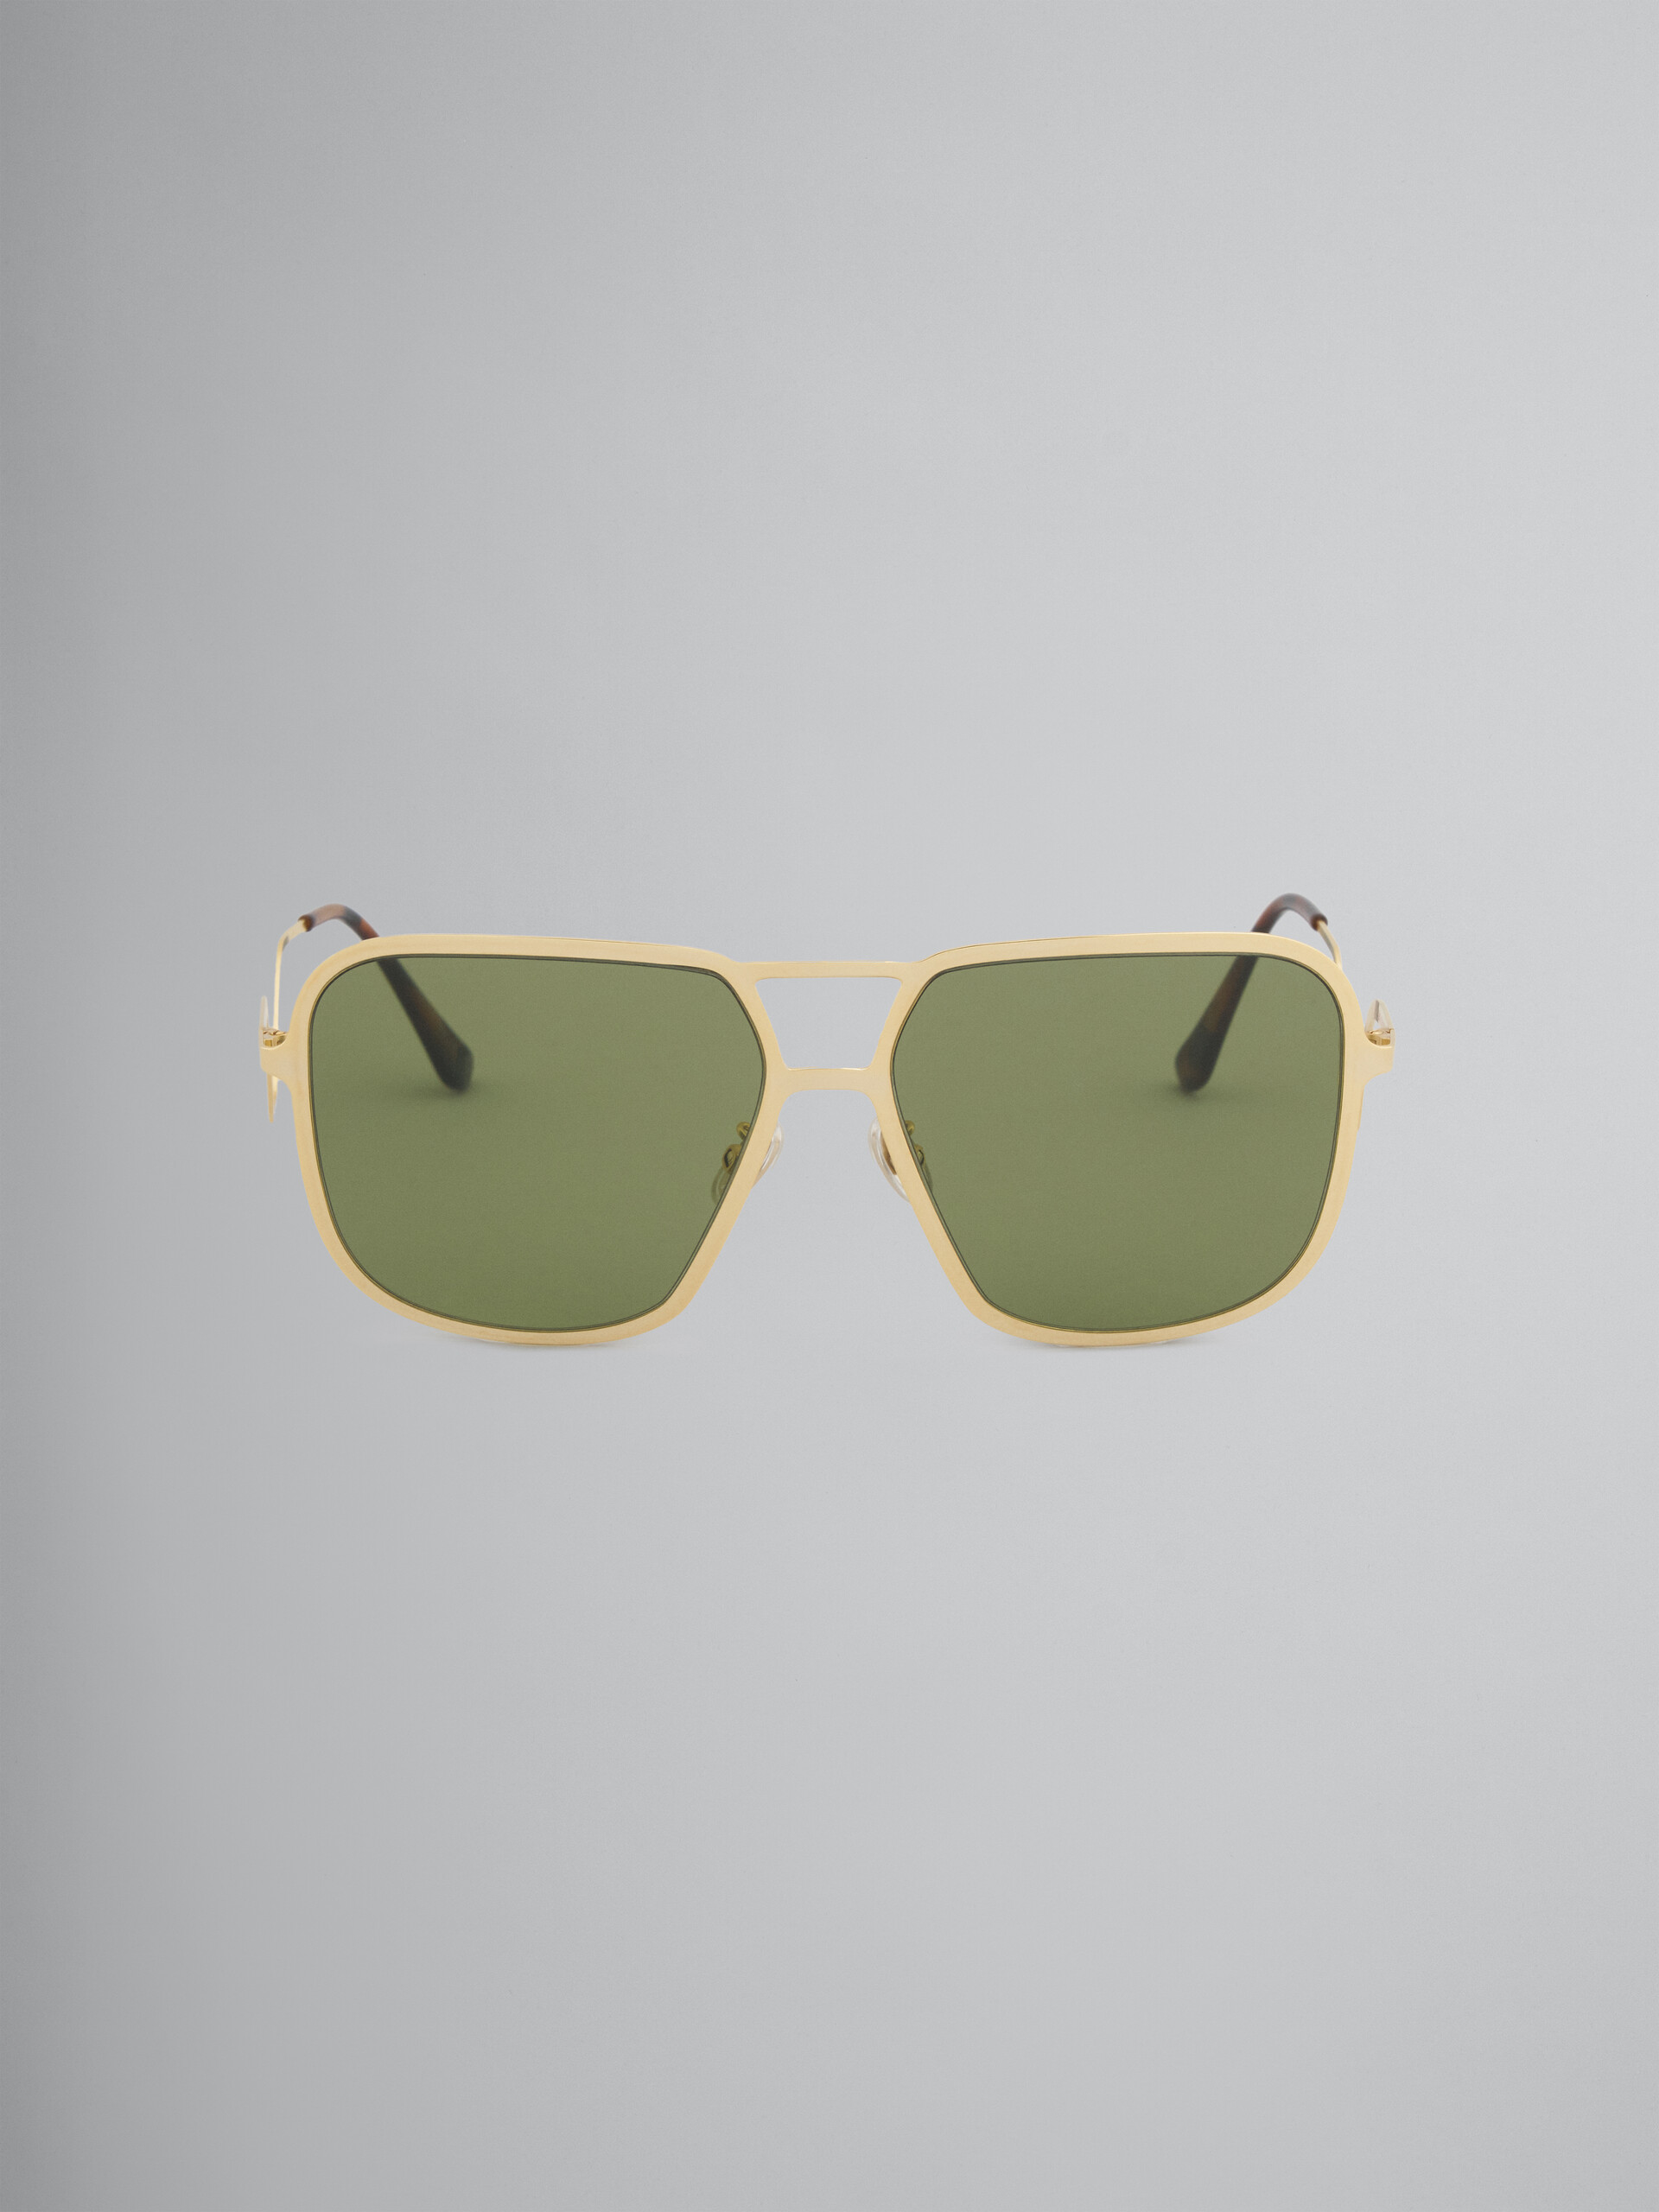 Occhiali da sole HA LONG BAY verdi in metallo - Occhiali da sole - Image 1